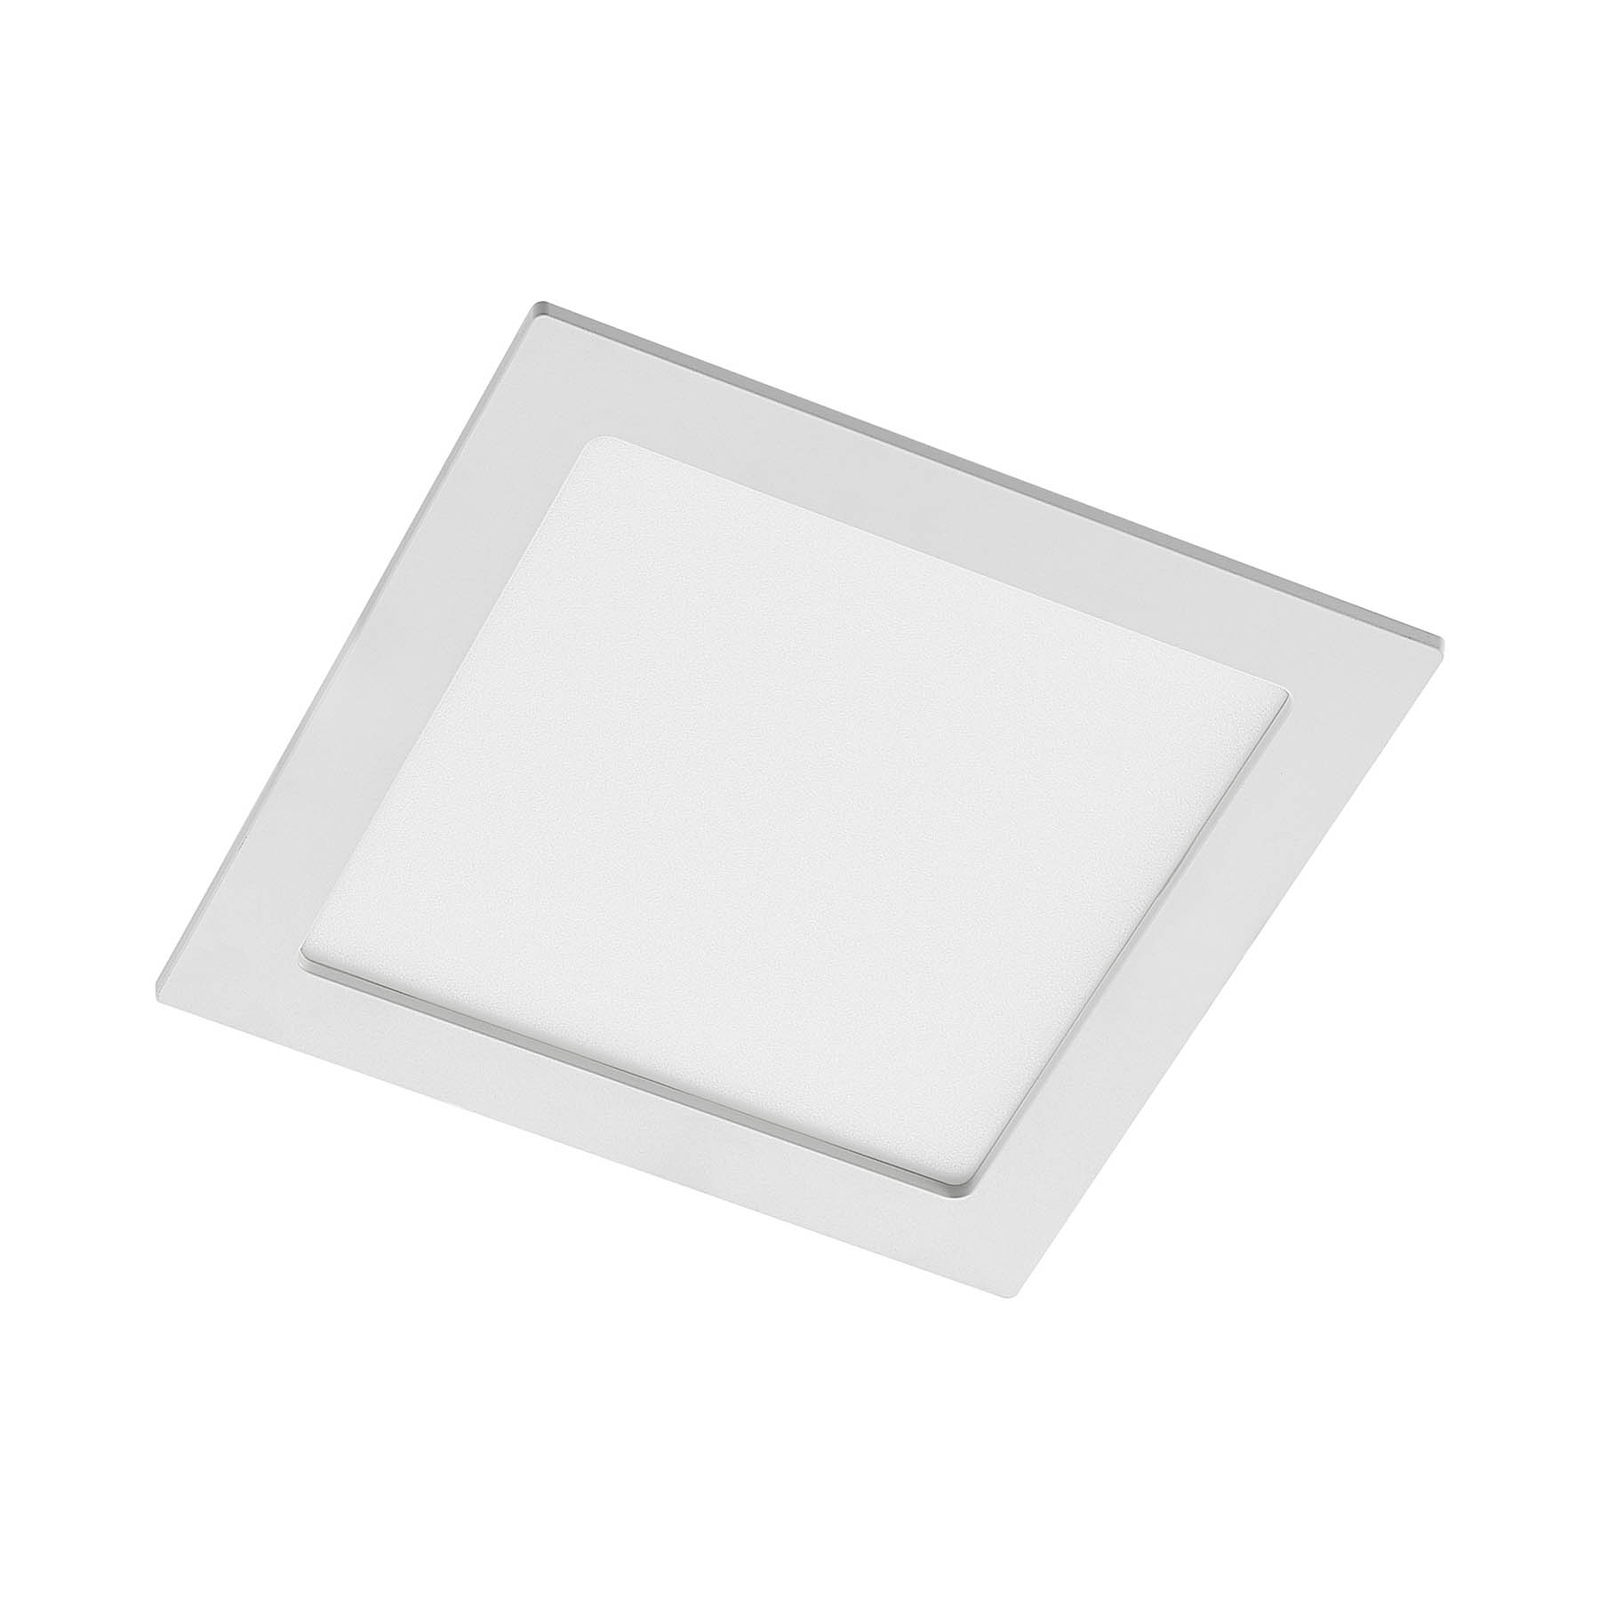 Prios Helina LED-Einbaulampe, weiß, 22 cm, 18 W